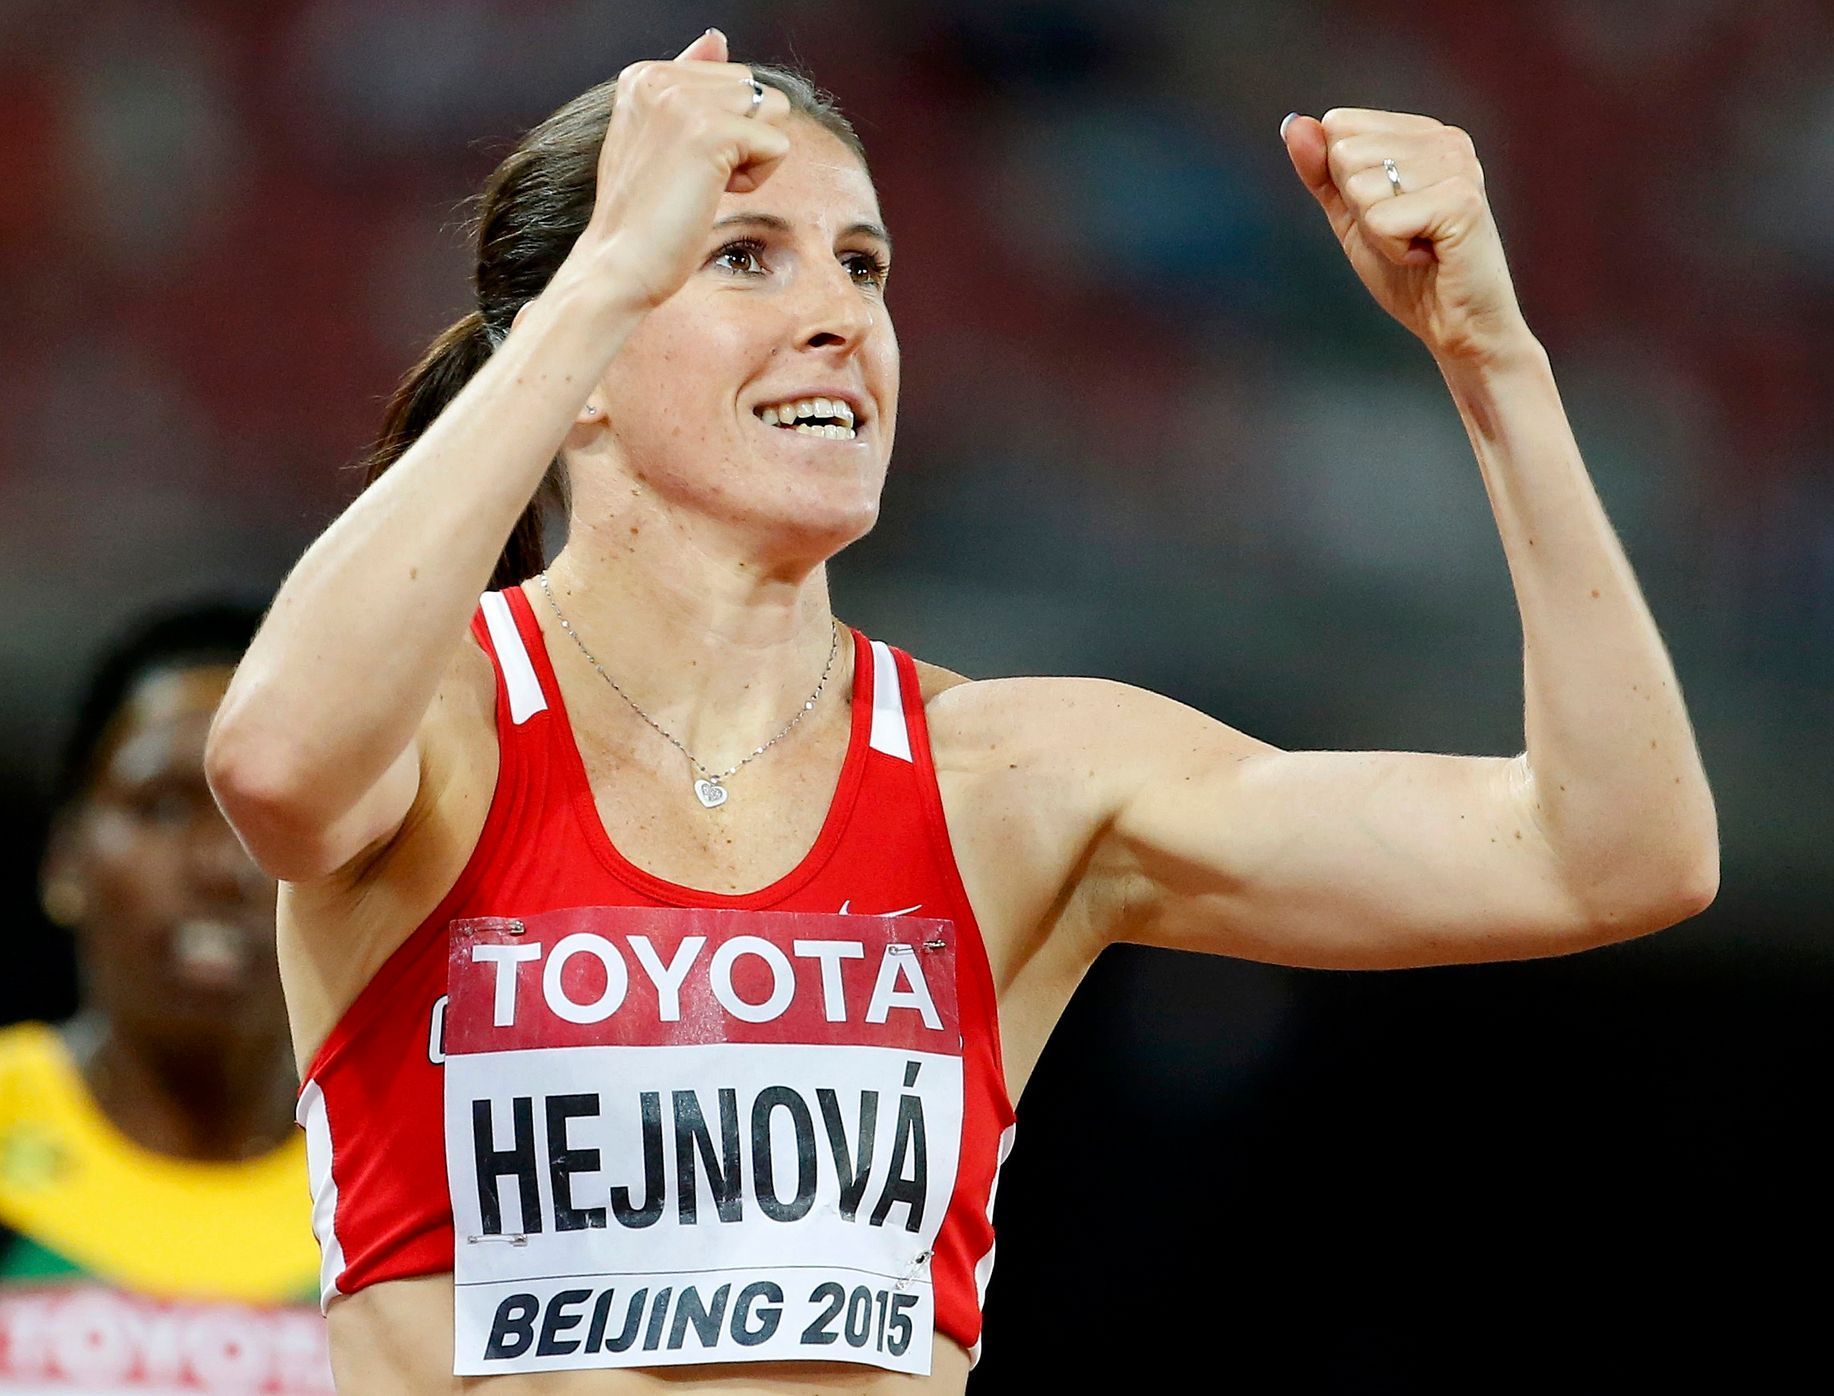 MS v atletice 2015, 400 m př. Ž:: Zuzana Hejnová